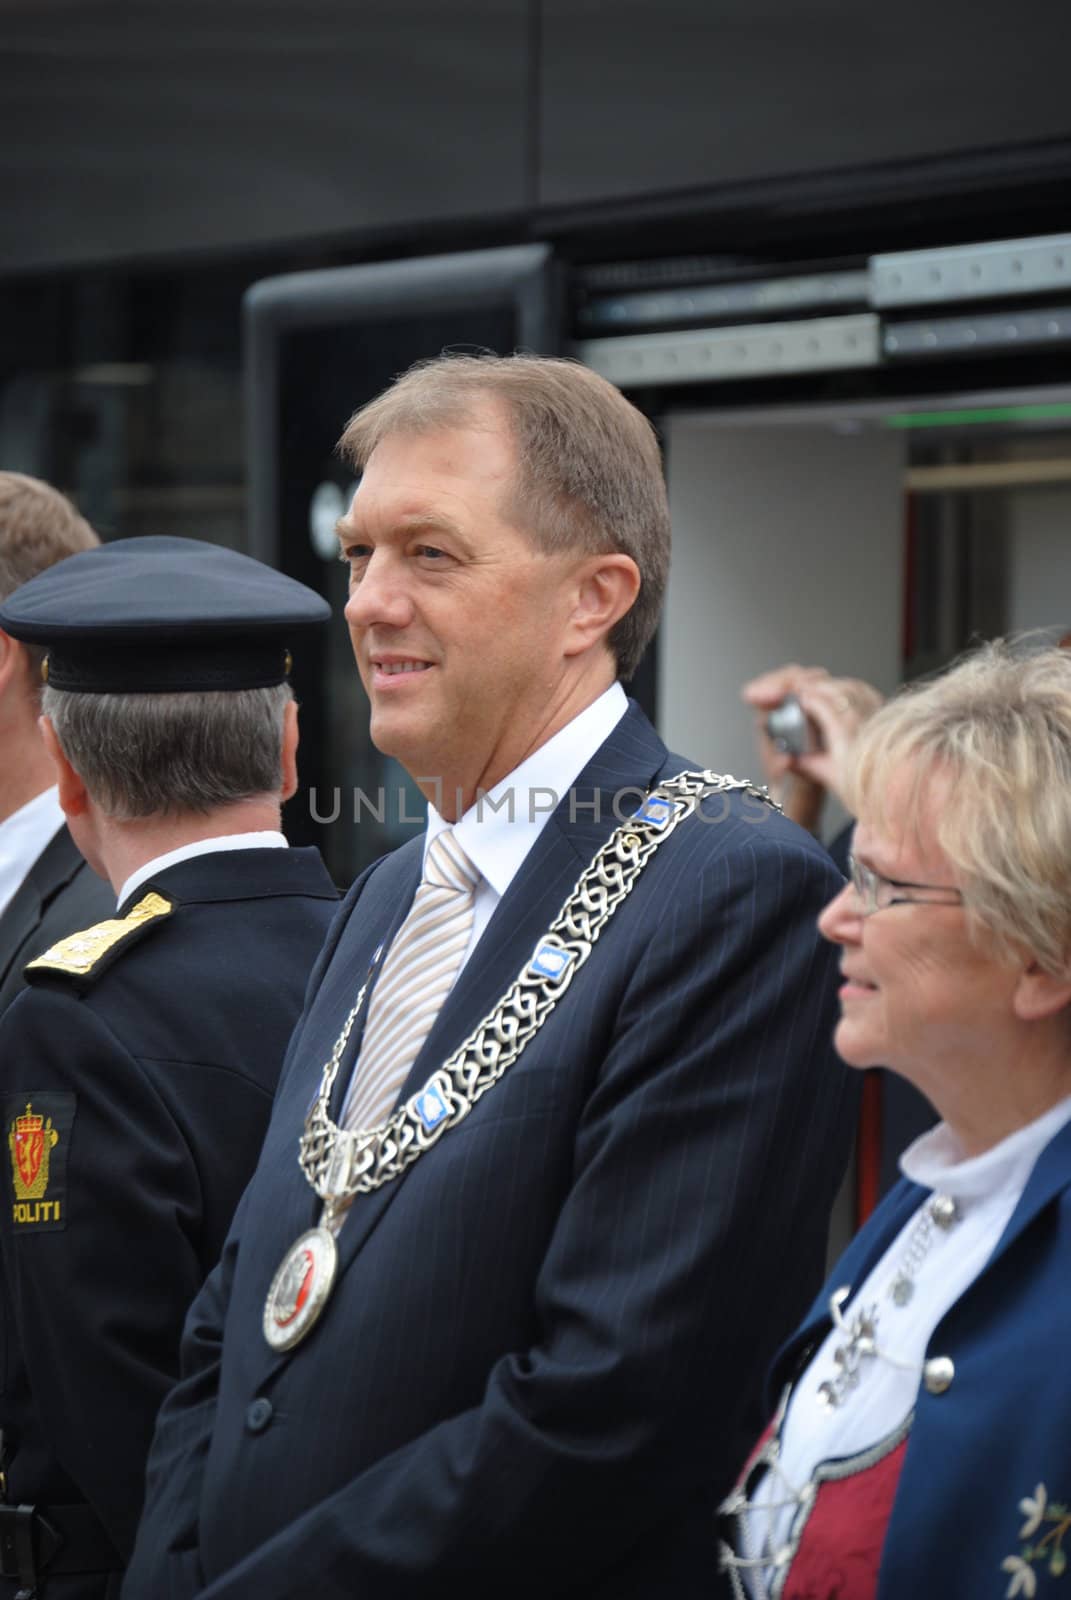 mayor in Bergen by viviolsen